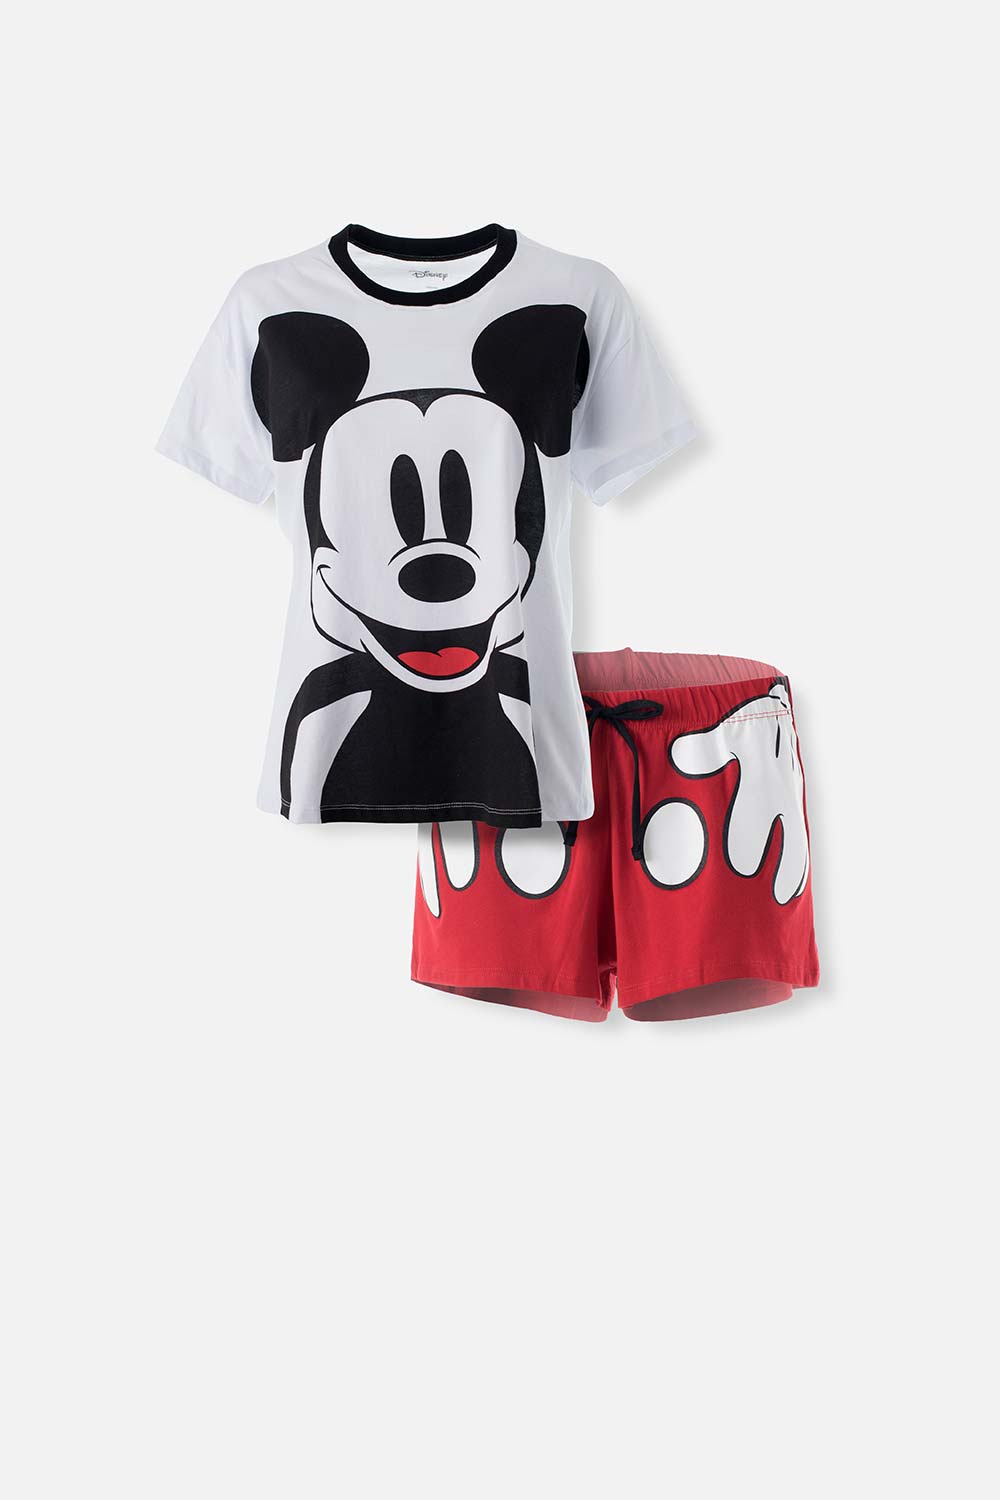 Pijama de Mickey Mouse blanca/roja manga corta/pantalón corto para mujer XS-0